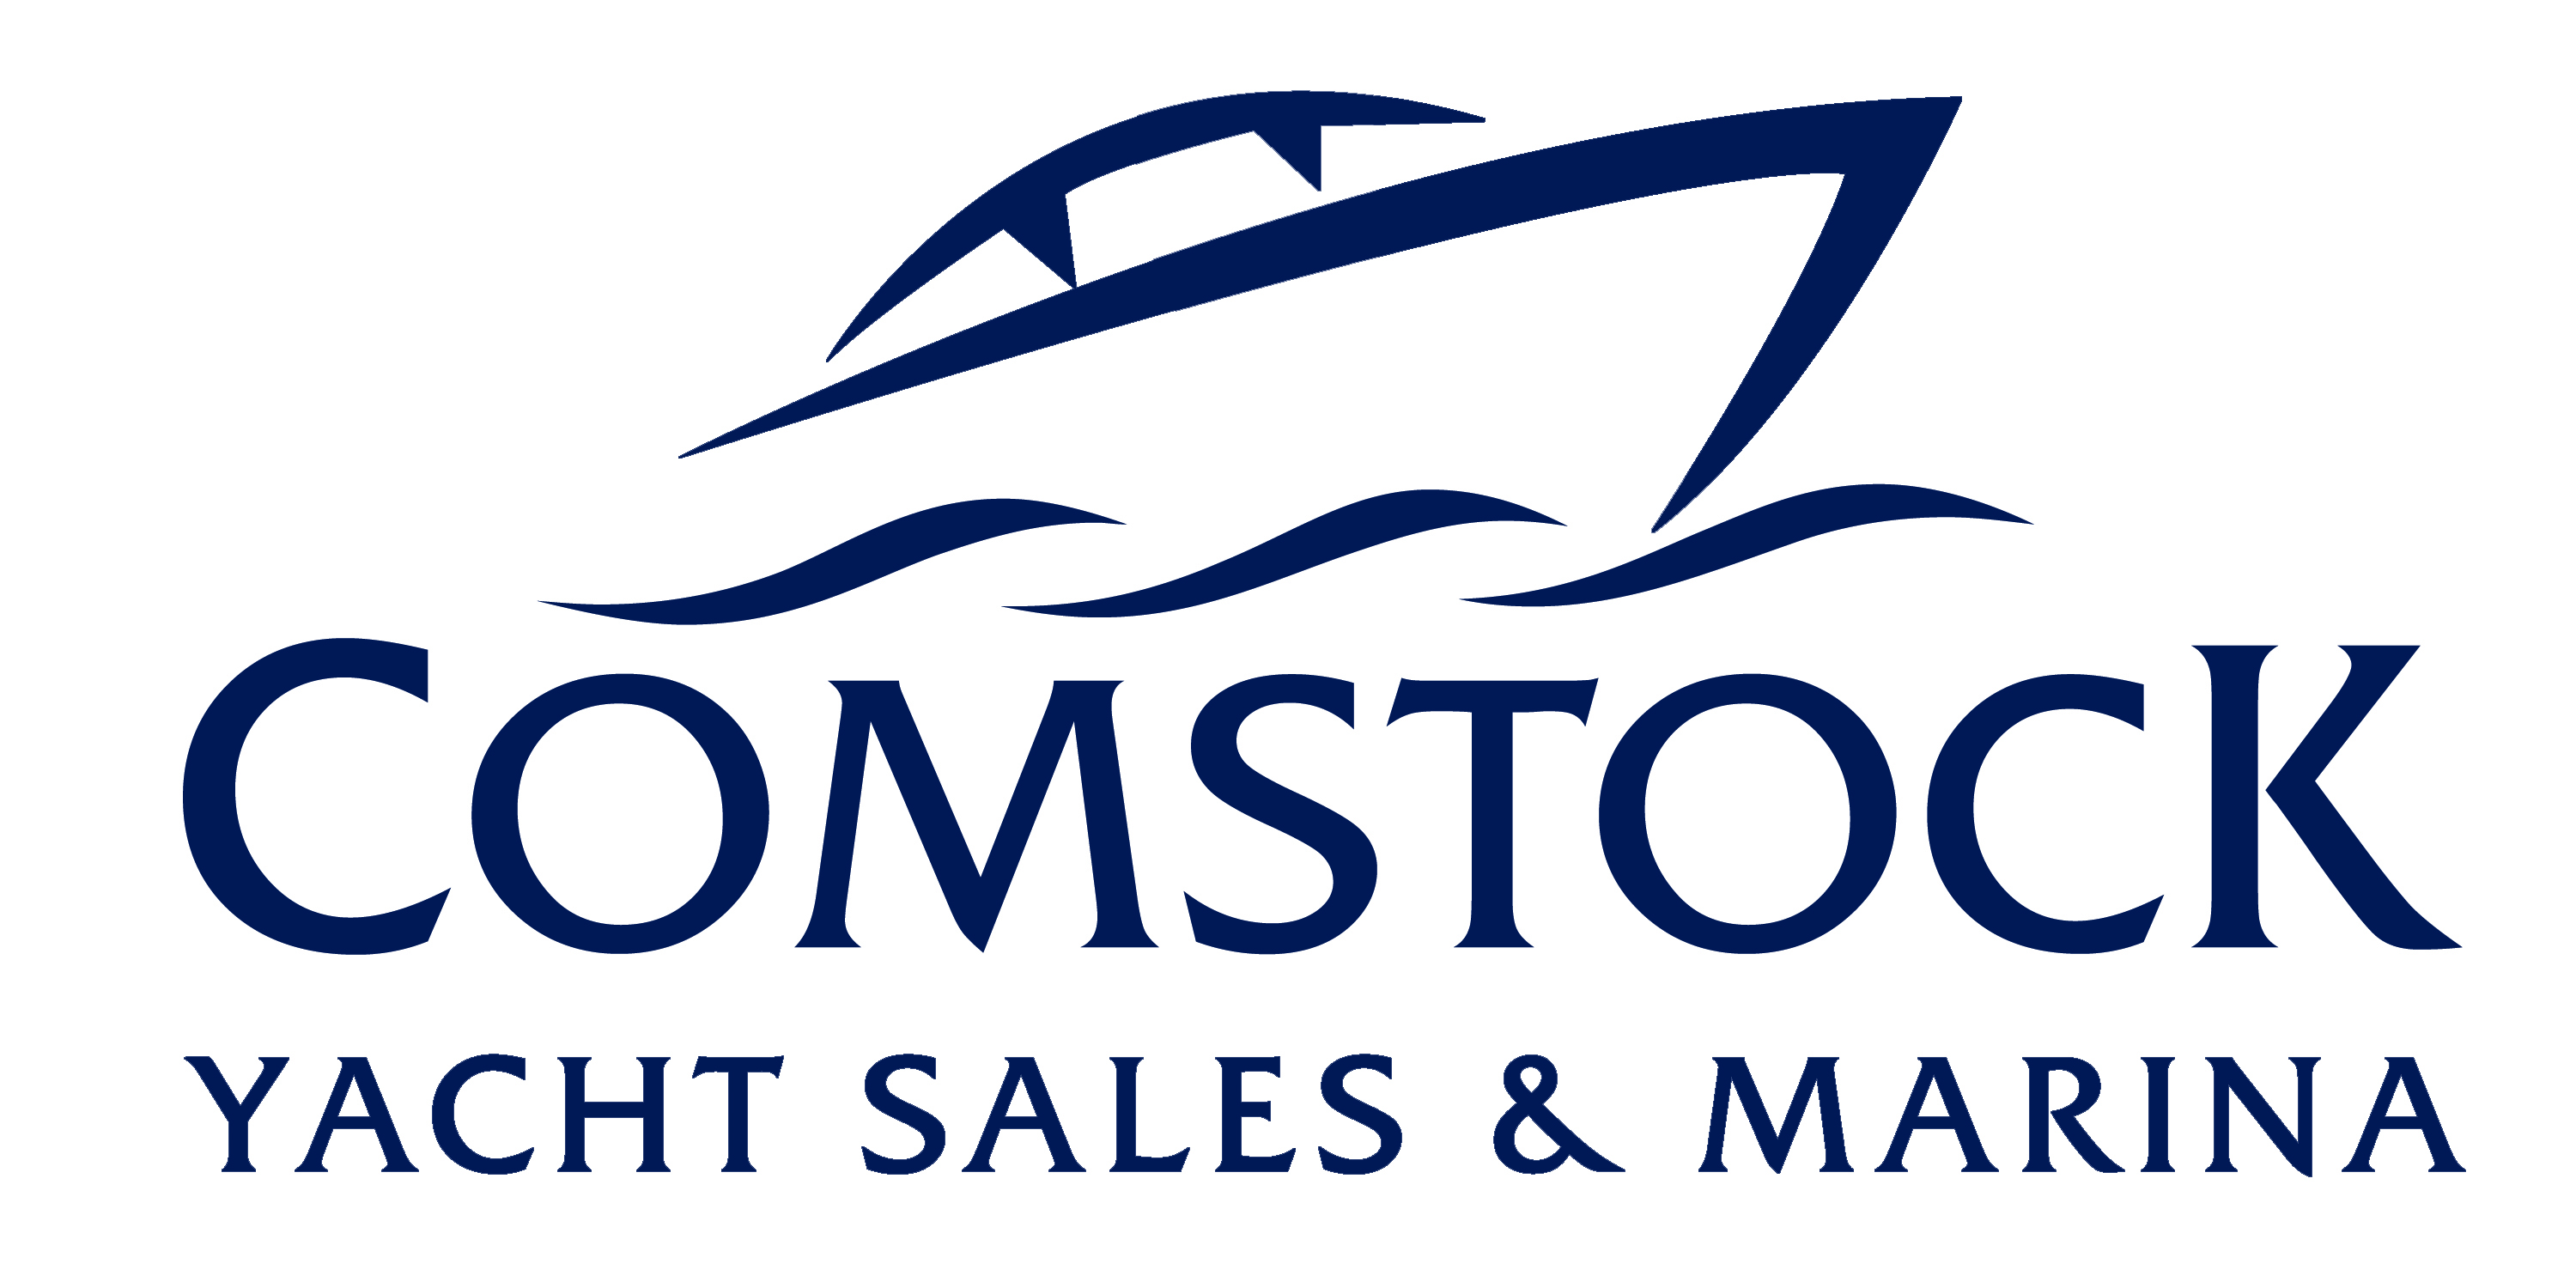 Comstock Yacht Sales & Marina logo